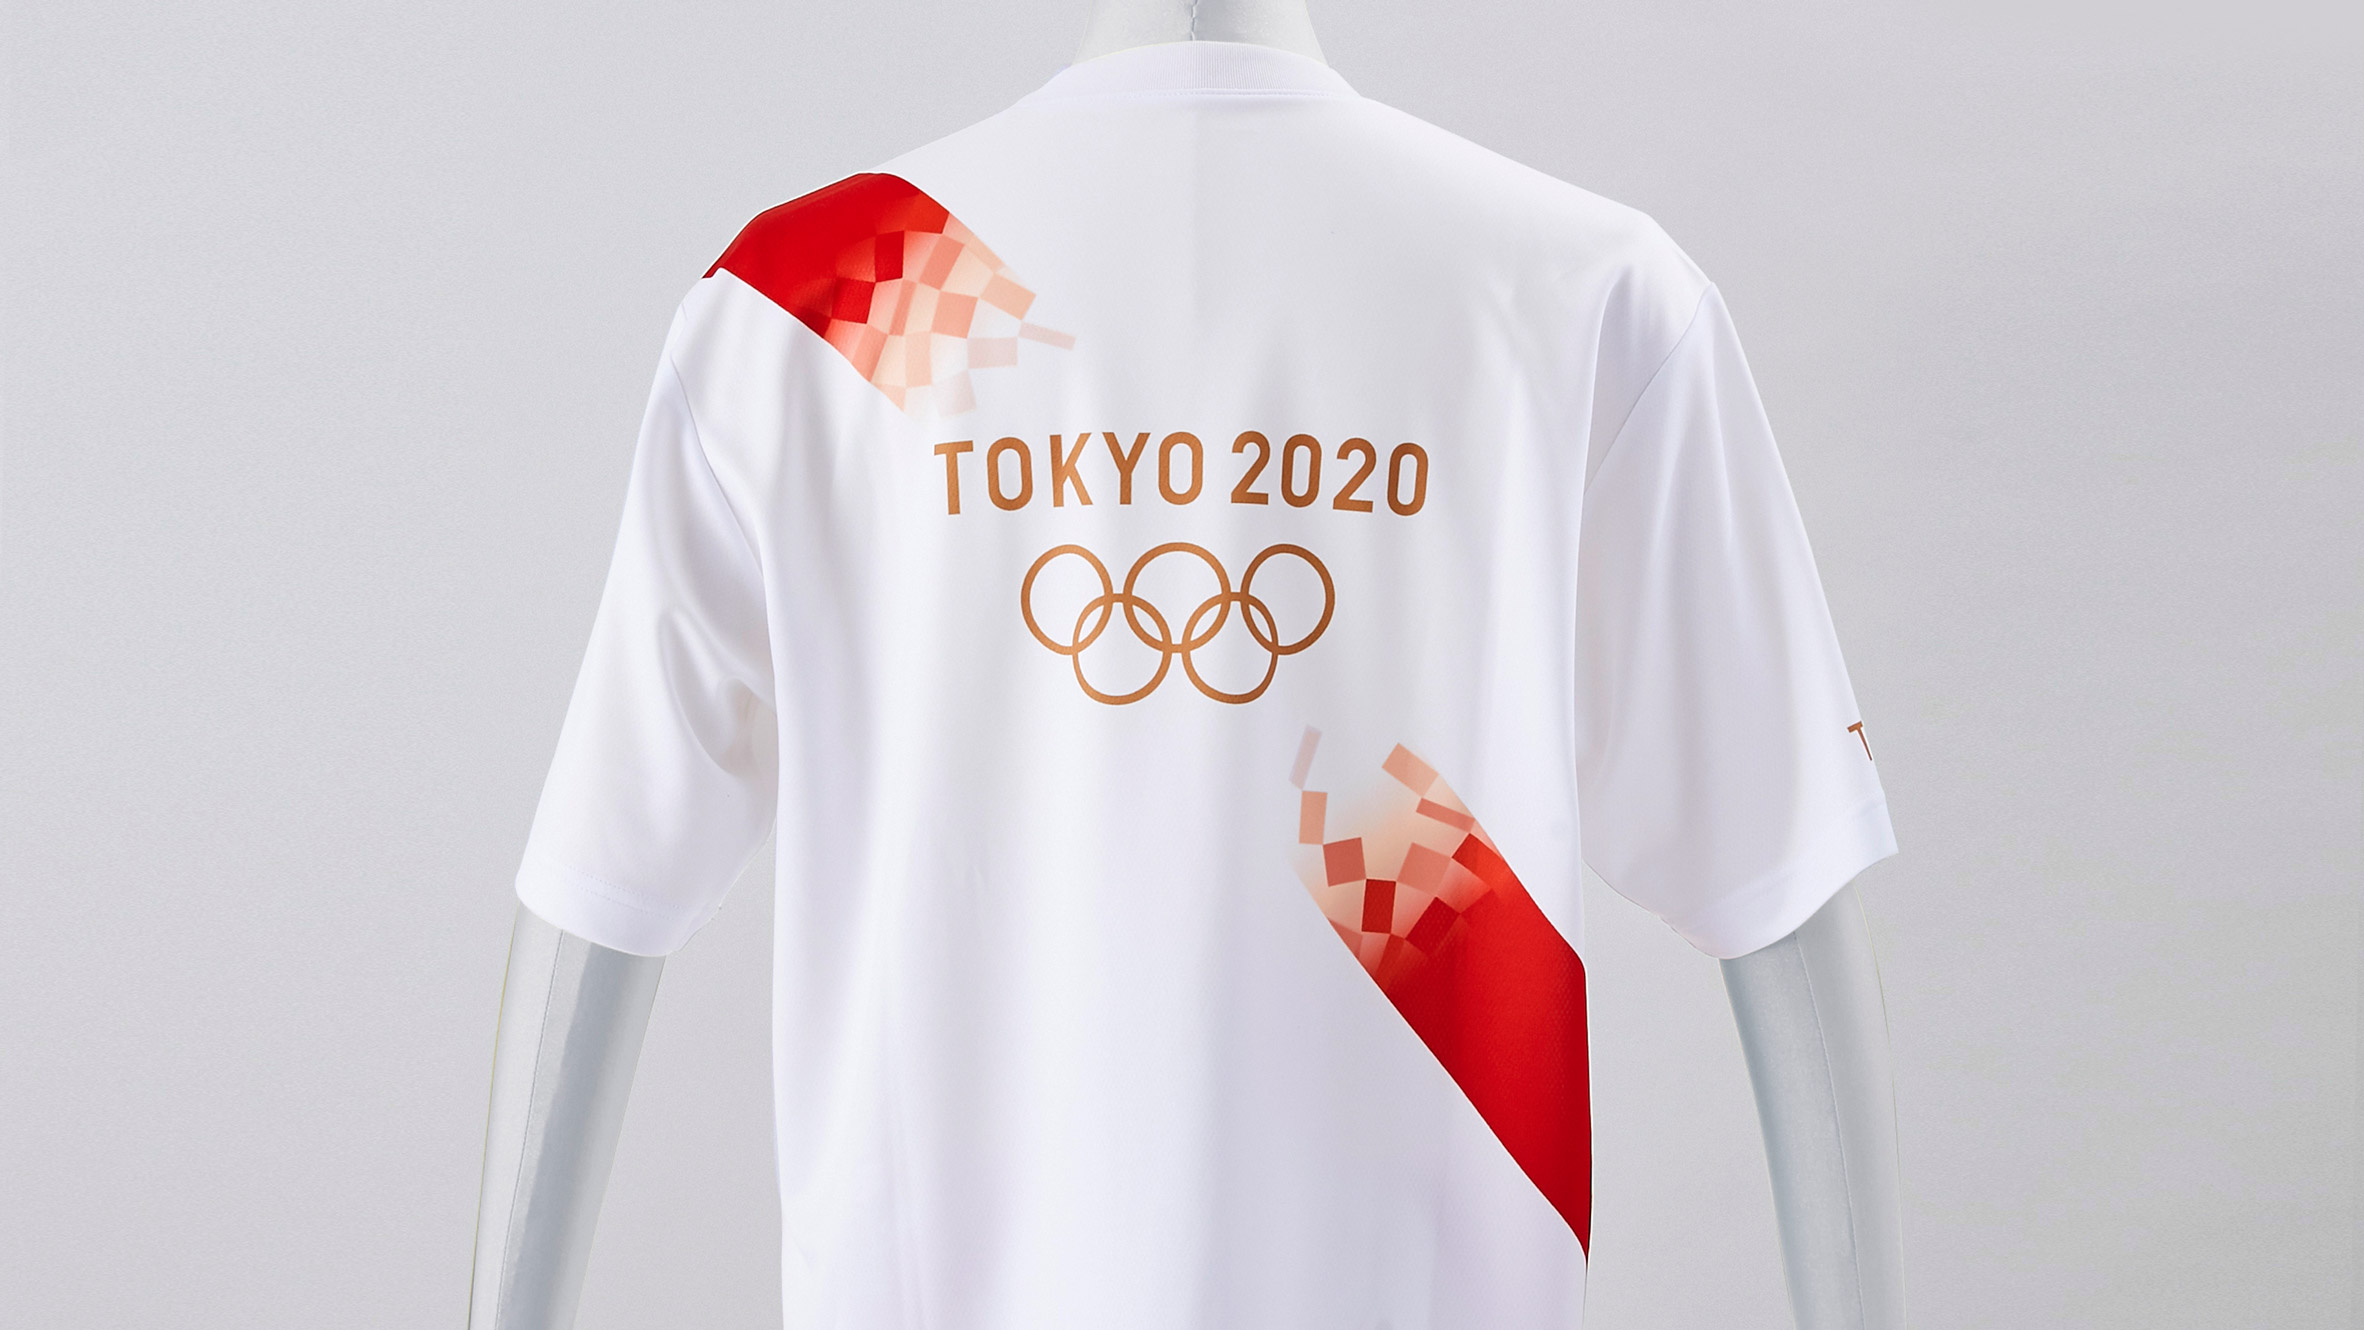 Tokyo 2020 Olympic torchbearers wear 